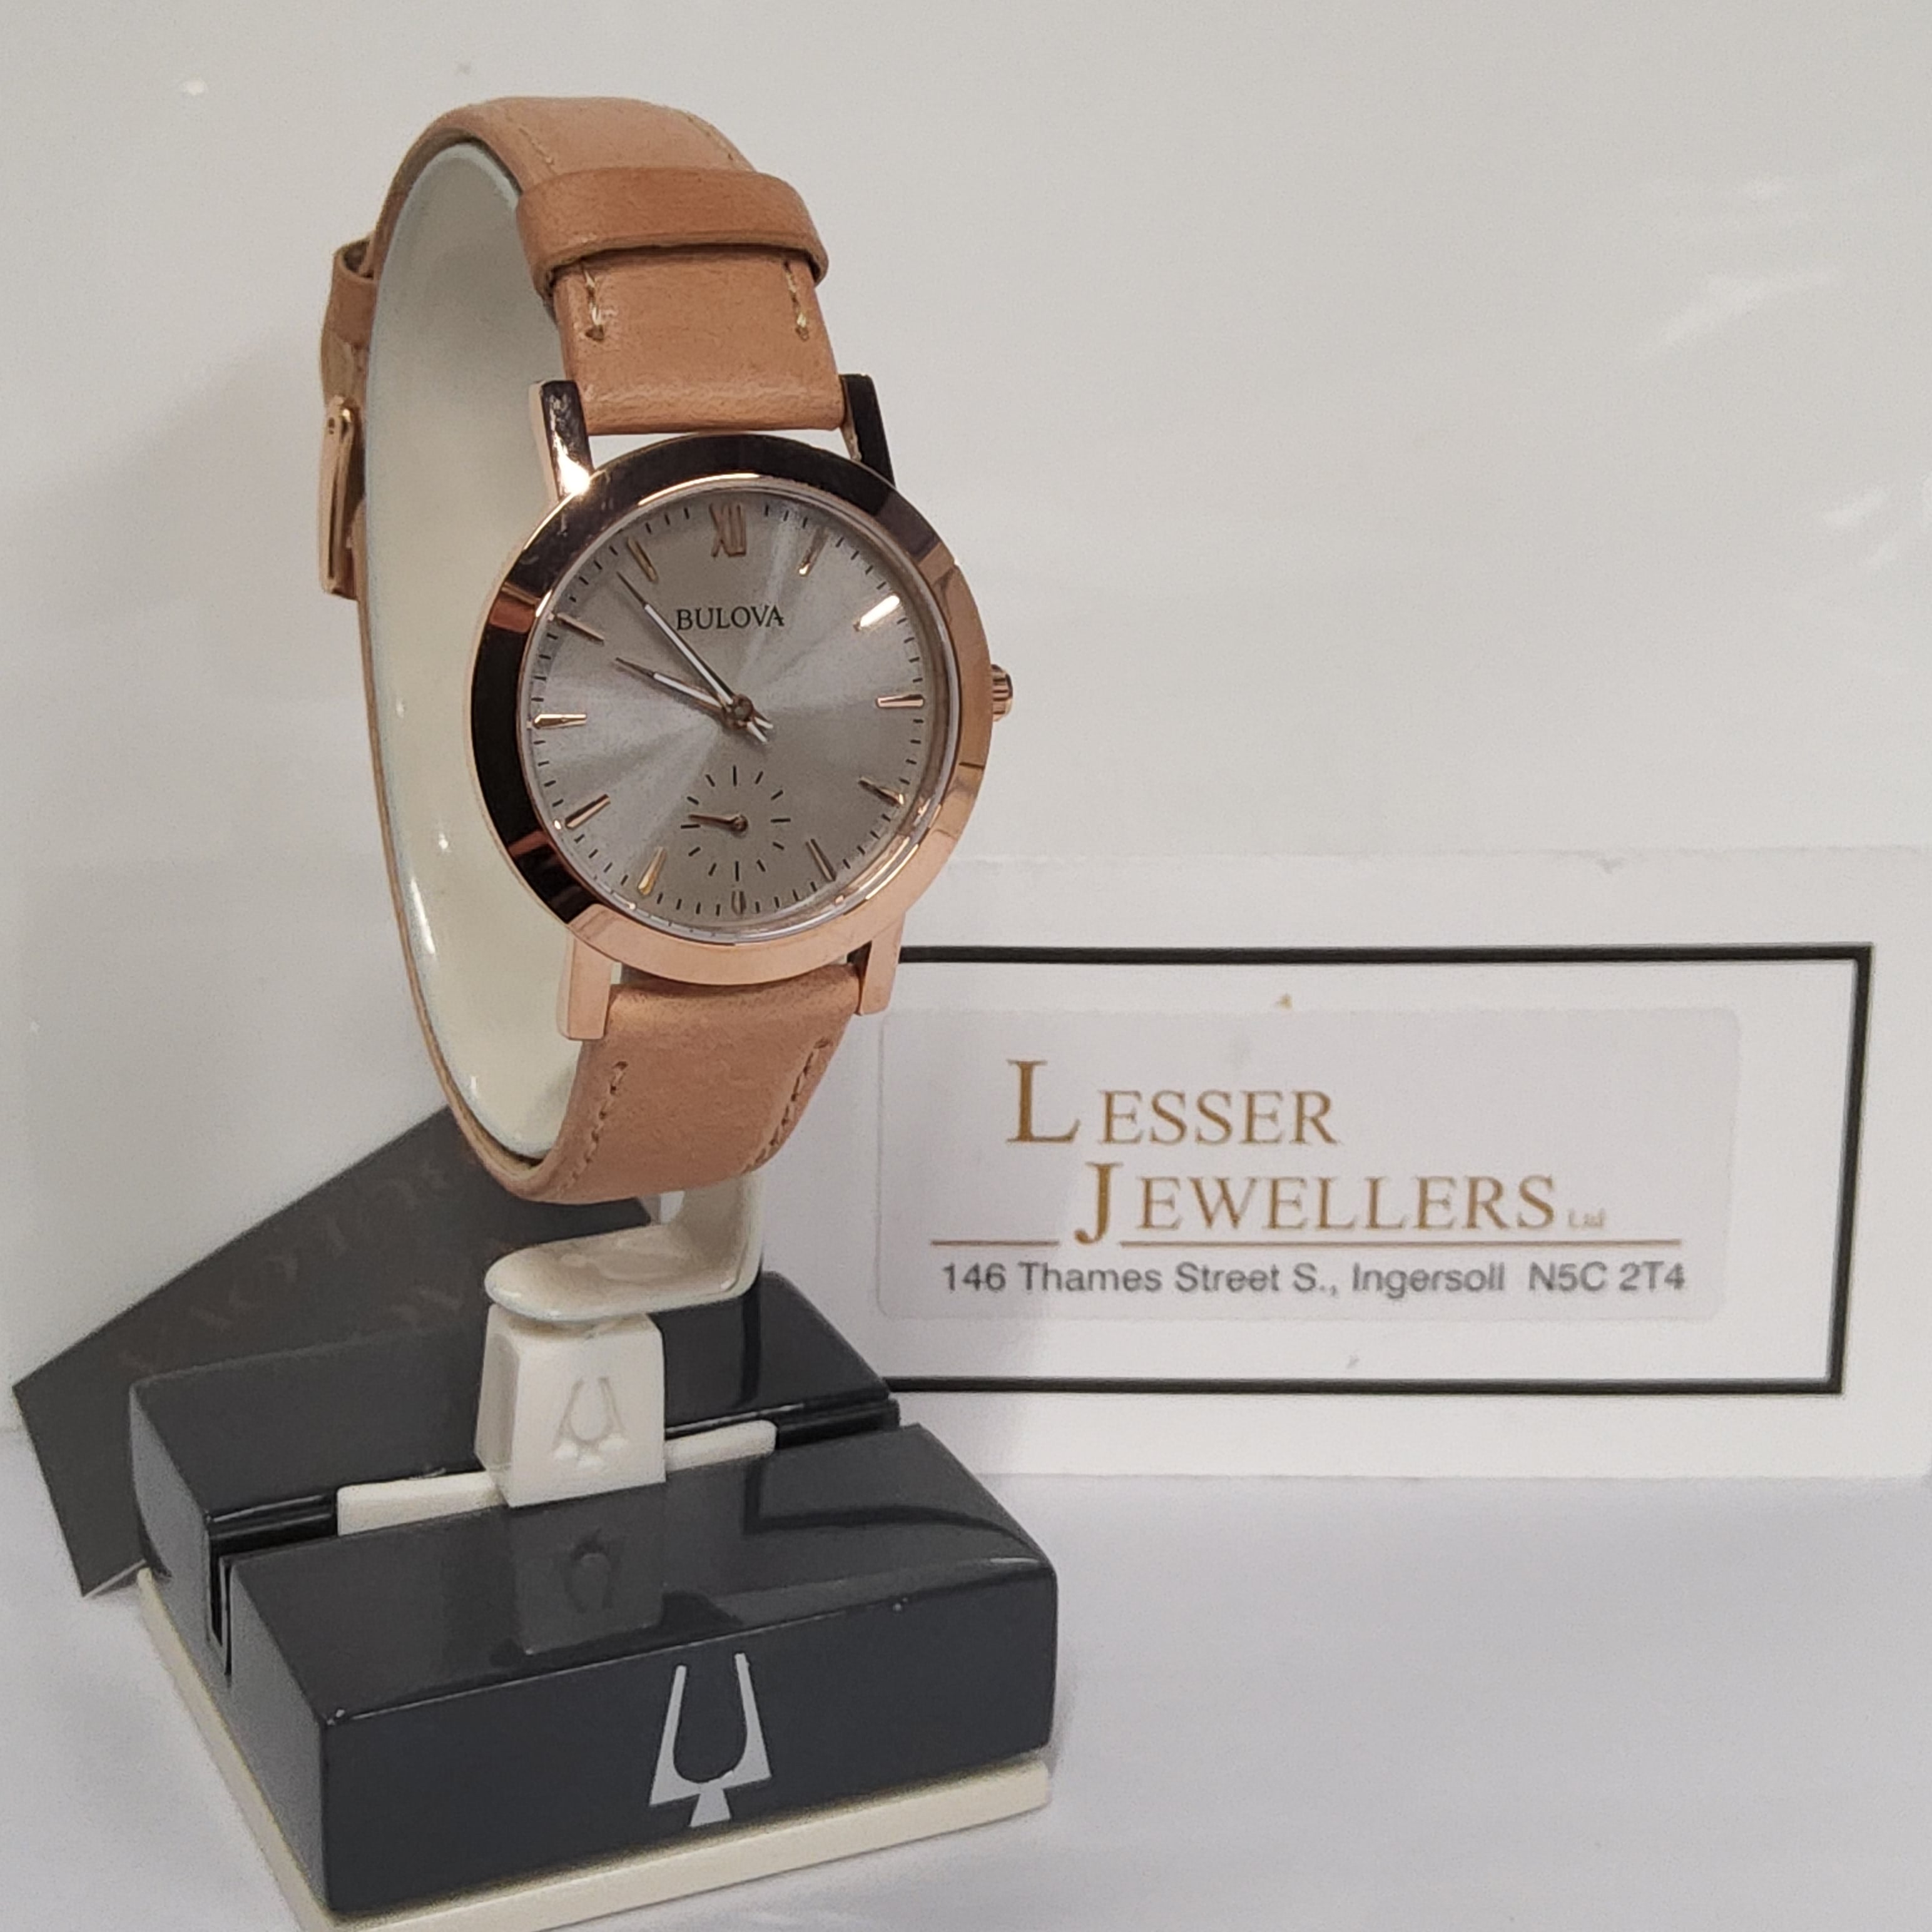 Bulova Brown Leather Rose Gold-Tone Watch - 97L146 (Classic)